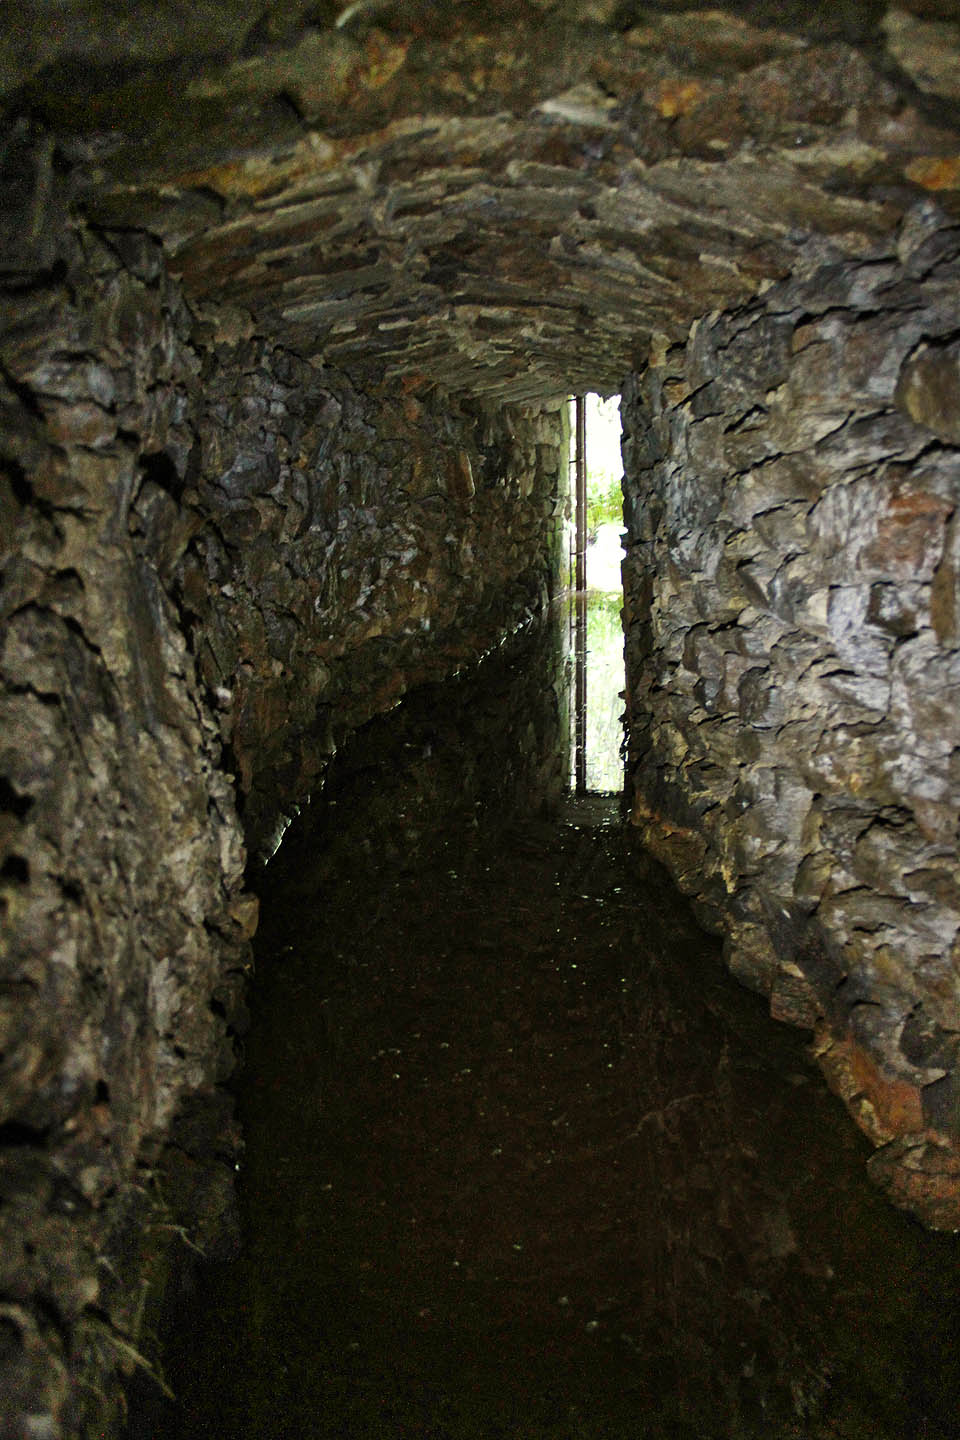 Úvodní část štoly je vyzděná z kamene a do výšky několika desítek cm zaplavená zahnívající důlní vodou.